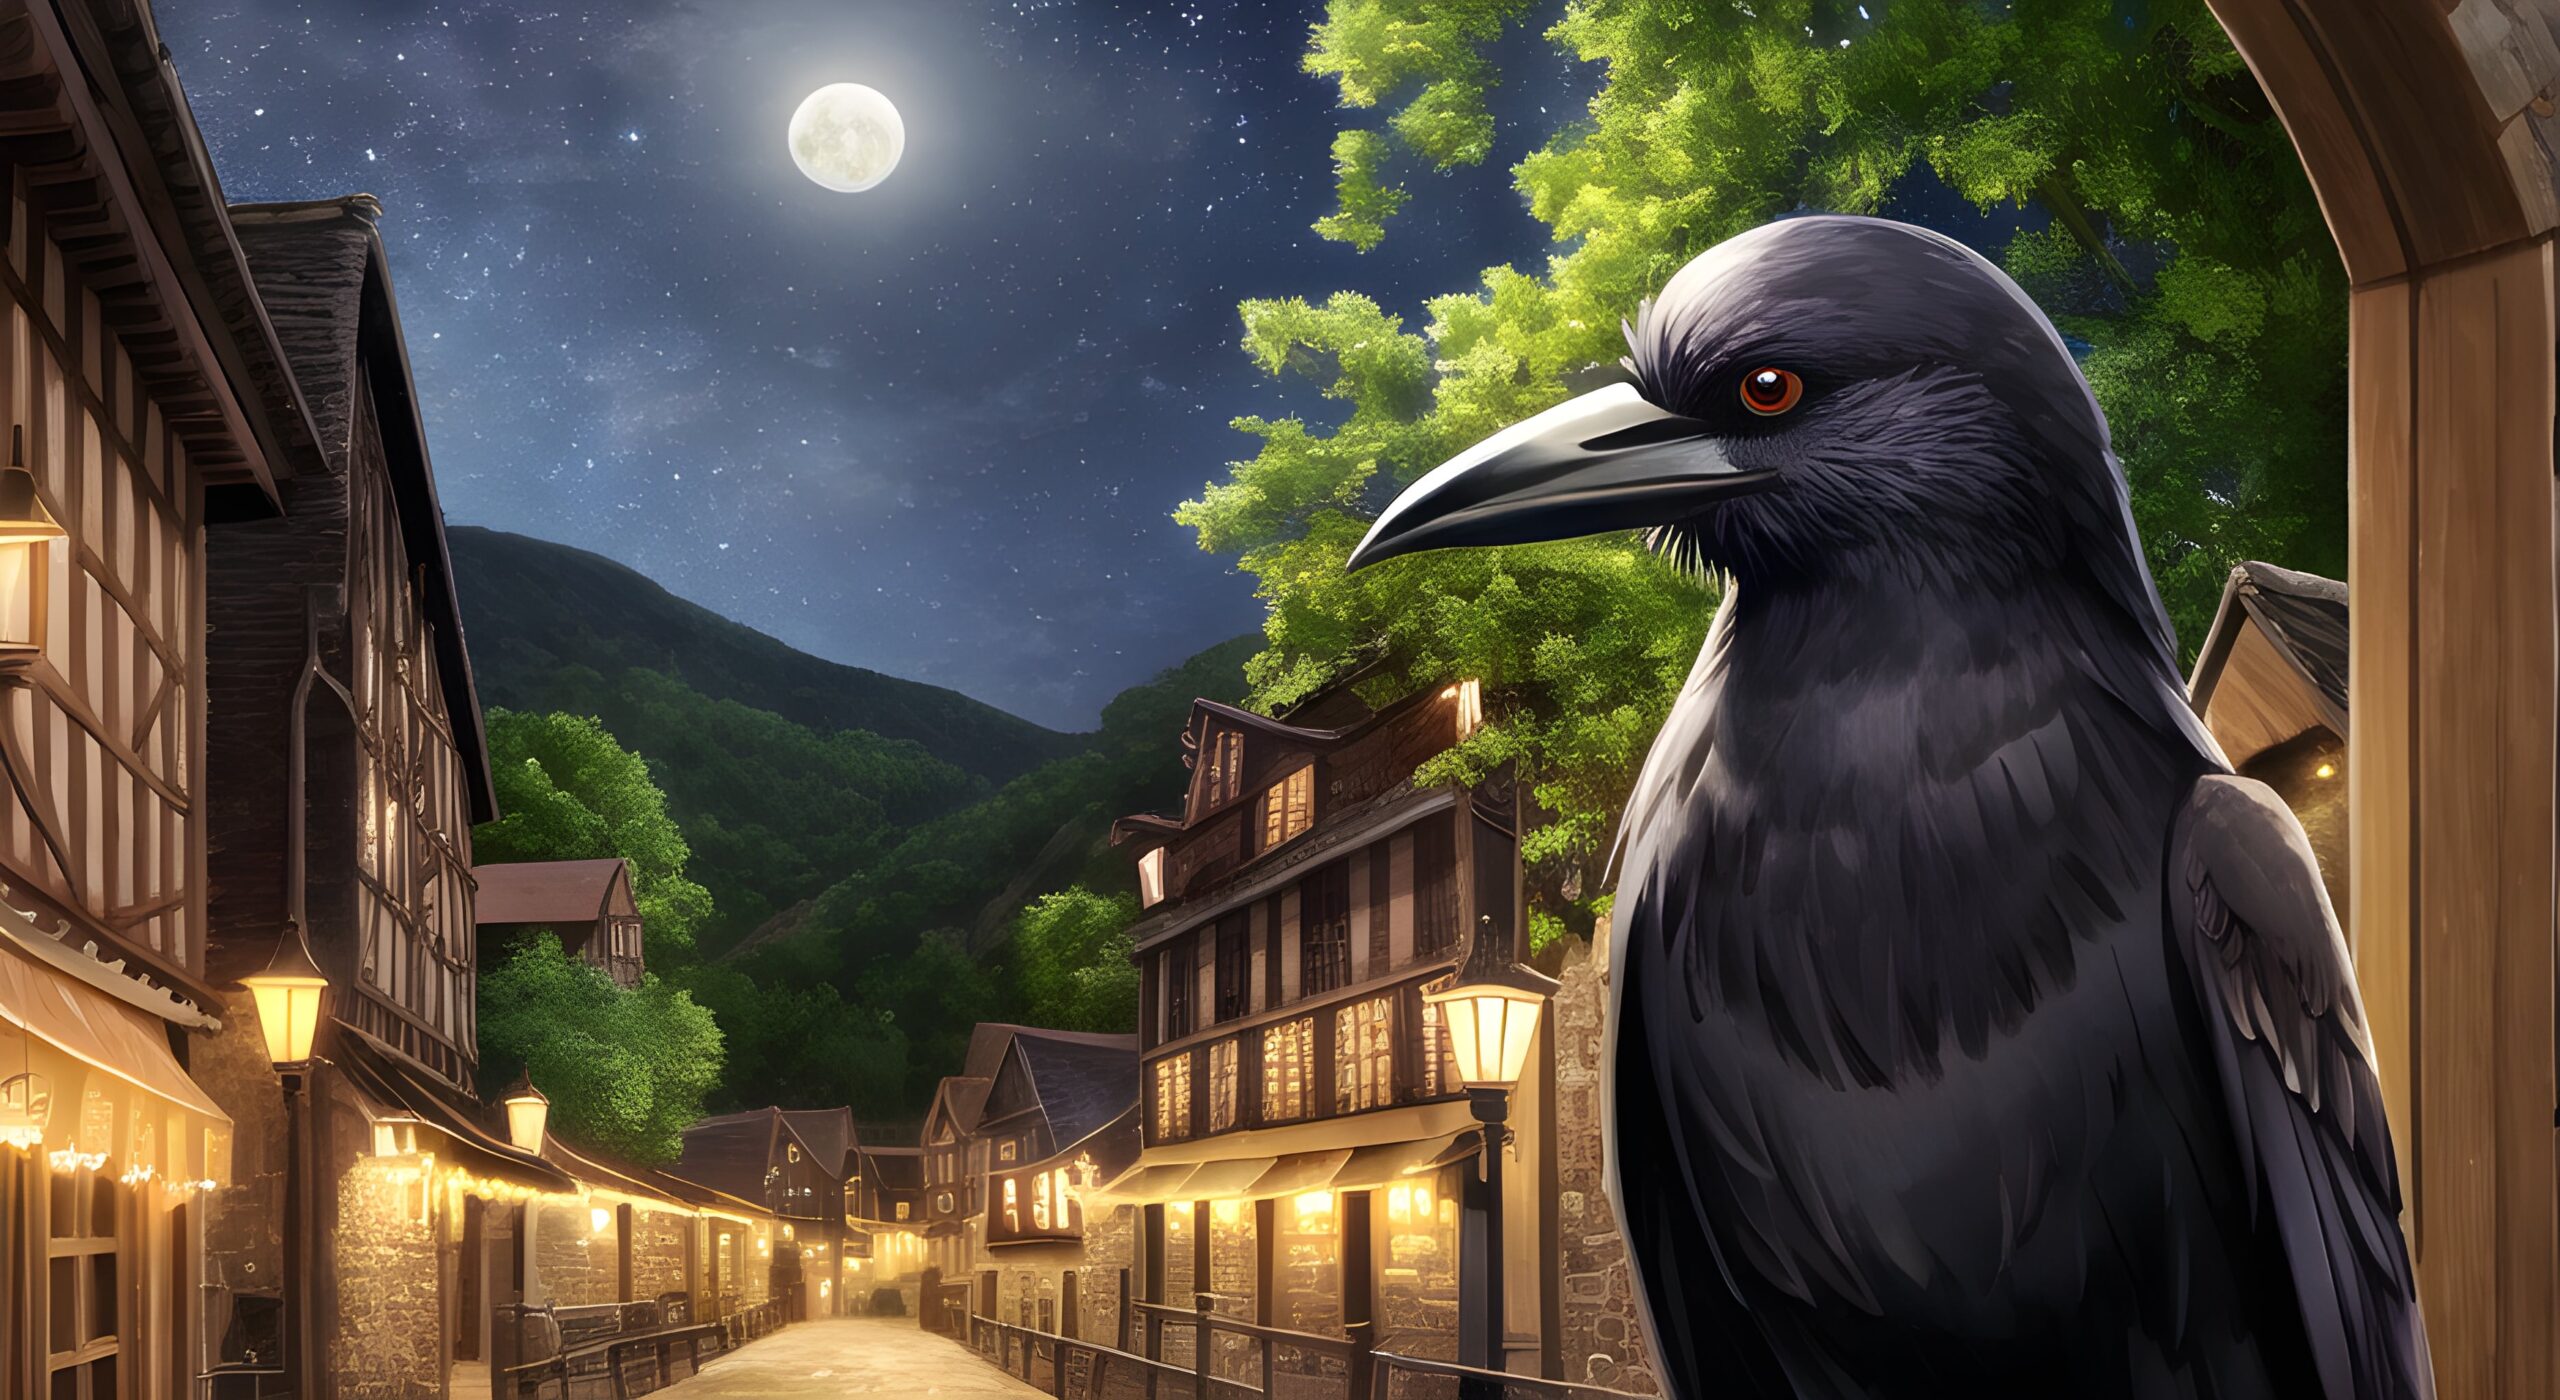 Midnight Crow in the Village